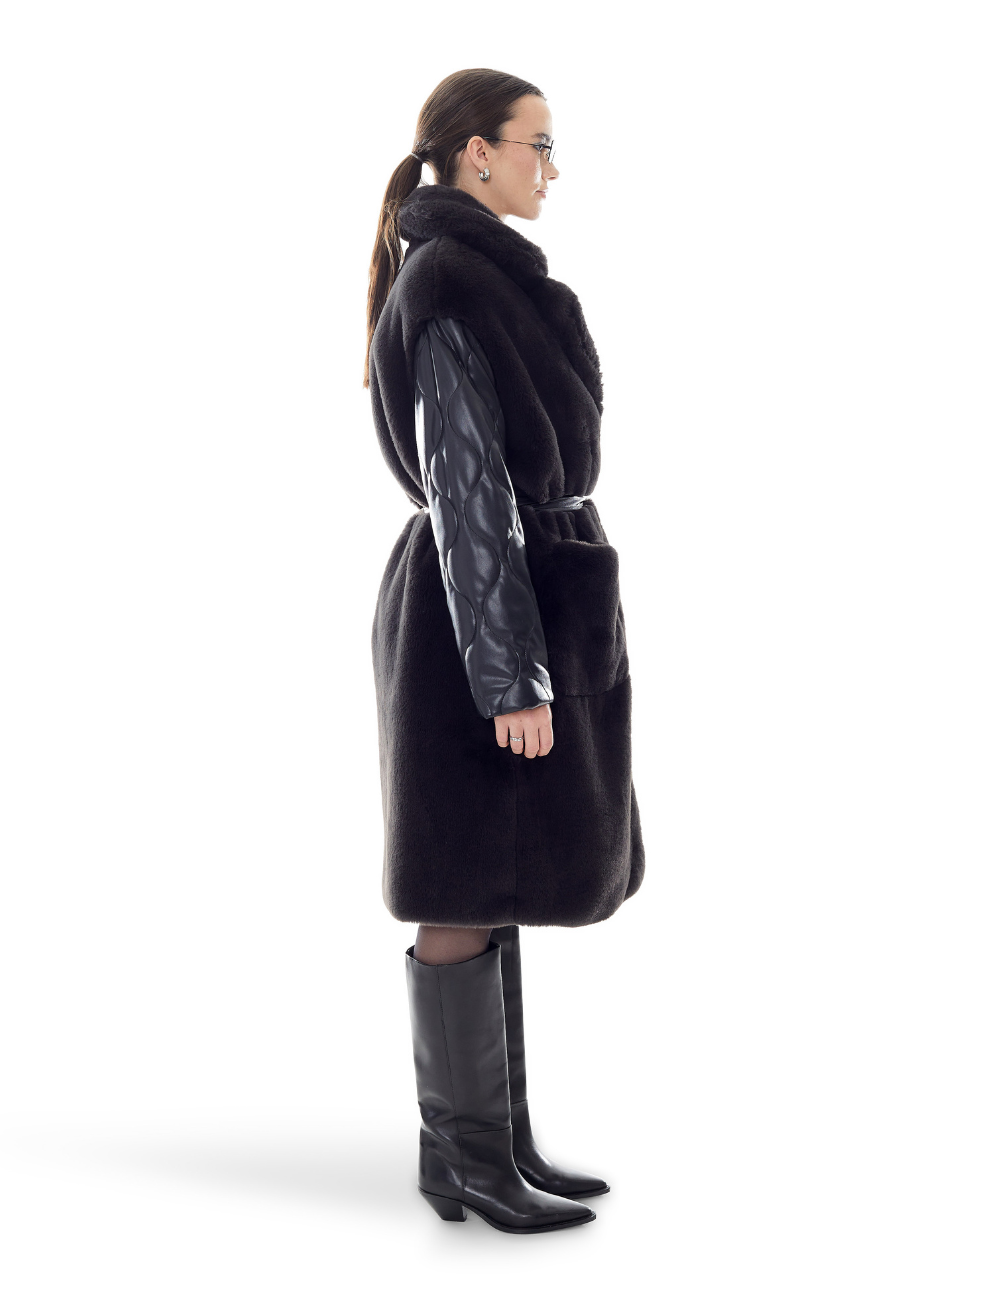 Sadie Black Coat Repurposed Vegan Leather Fur Outerwear Made in Canada